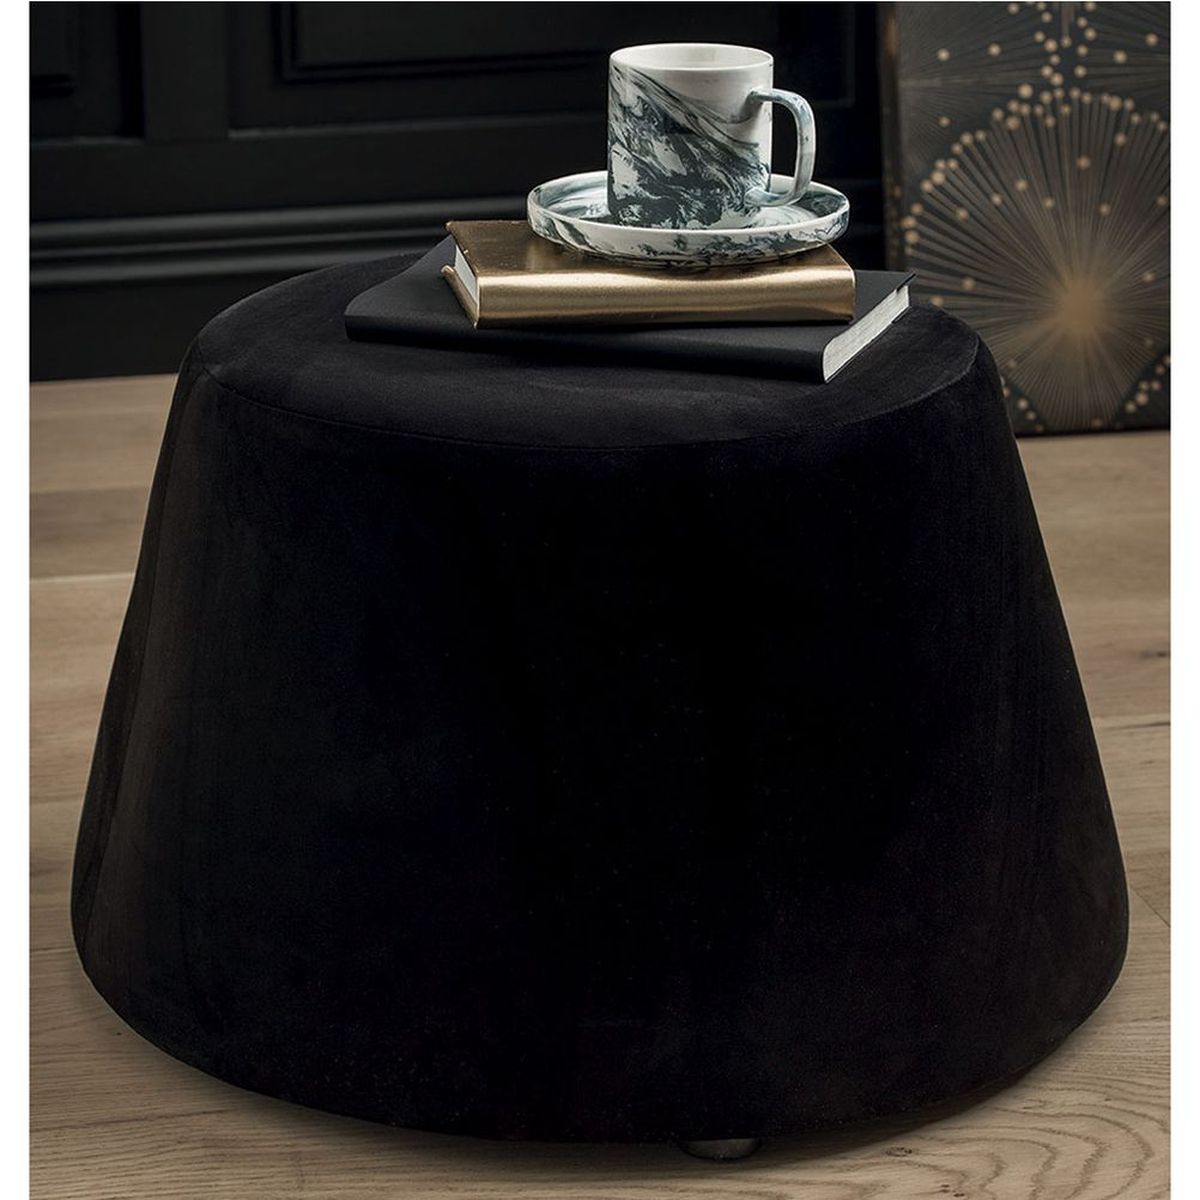 Pouf covered with black velvet 31.5 x 34 x 46.5 cm